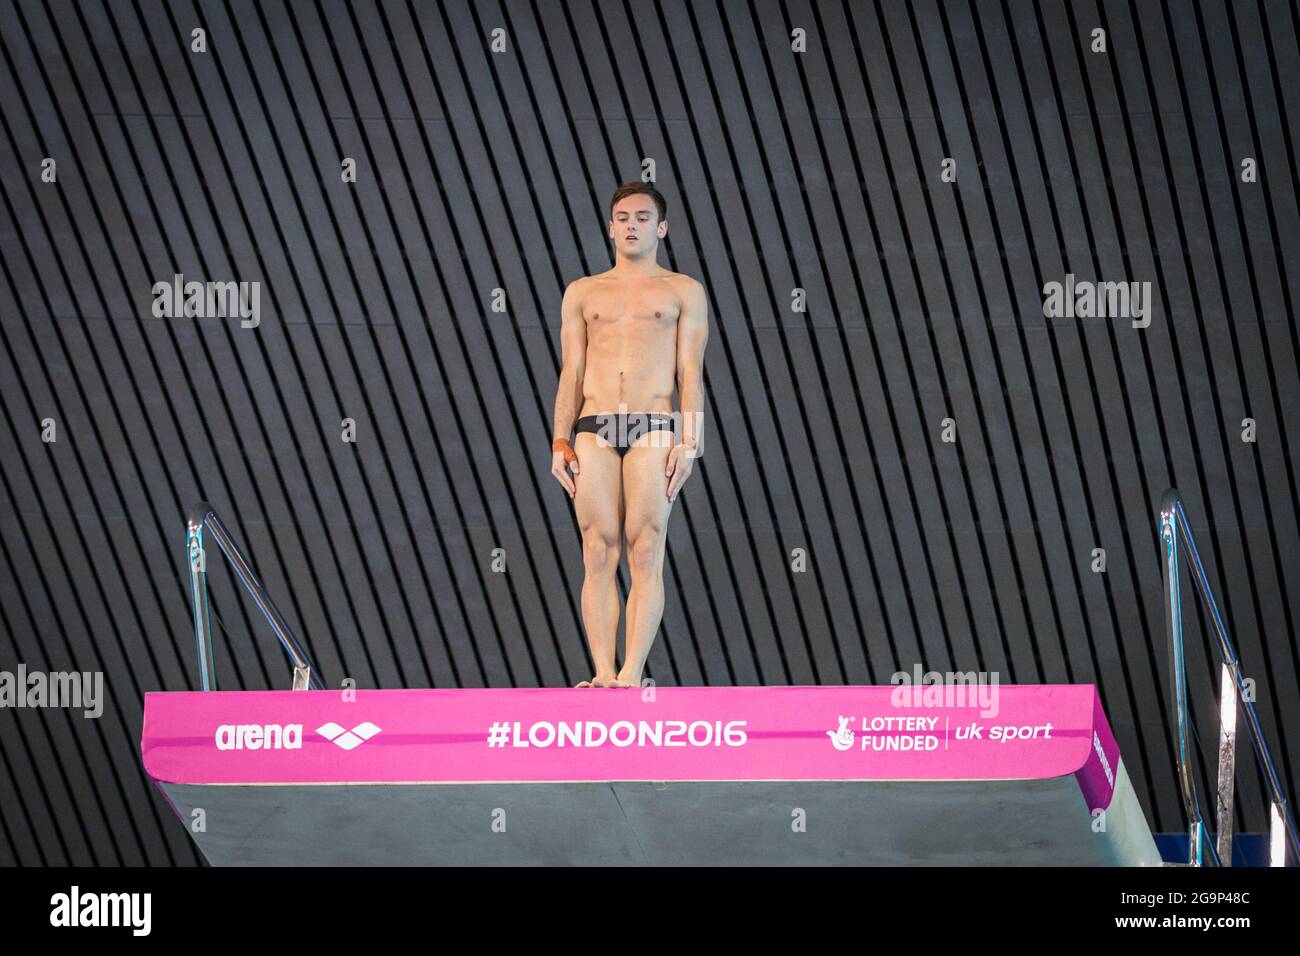 Le plongeur britannique Tom Daley (Thomas Daley) se concentre avant une plate-forme de plongée de 10 m, European Diving Championships 2016, Londres, Royaume-Uni Banque D'Images